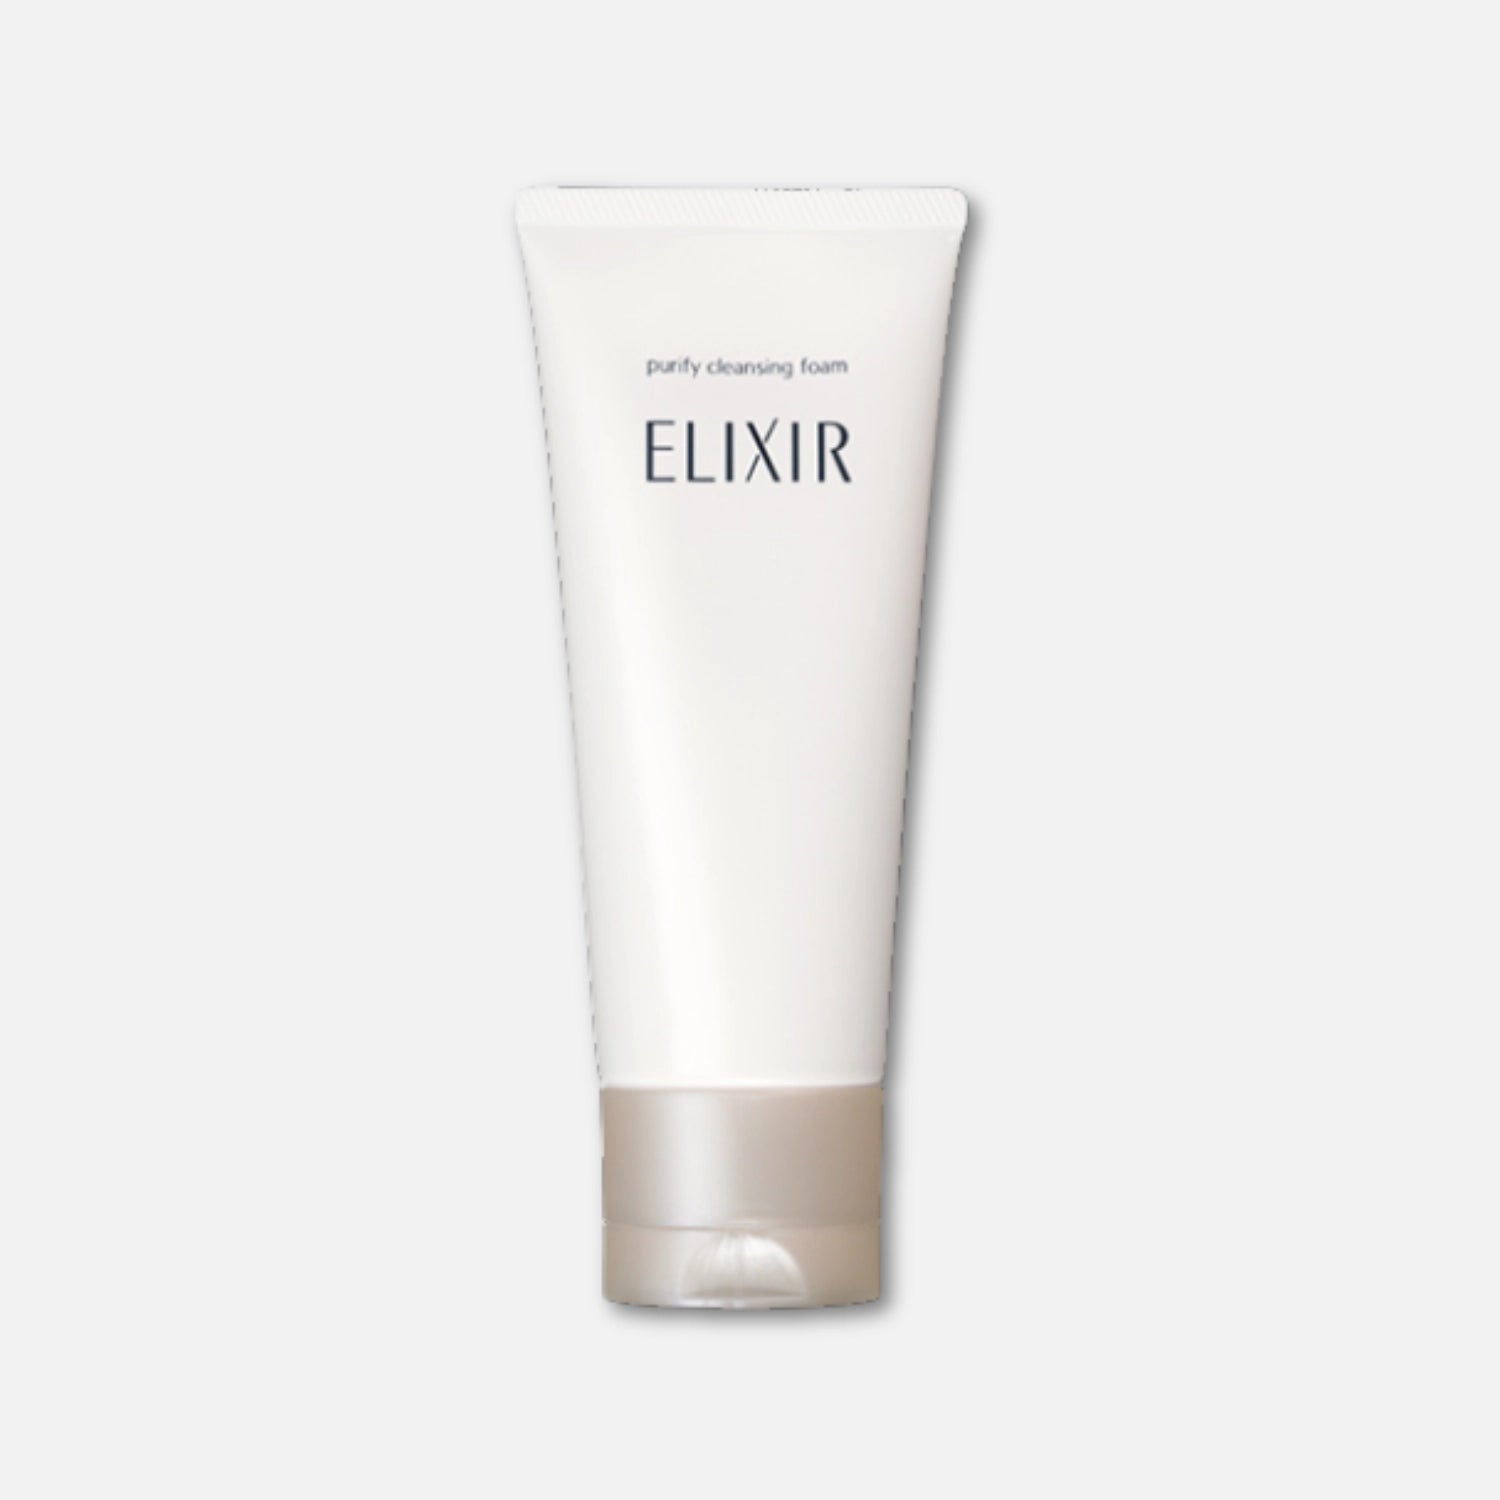 Shiseido Elixir Purity Cleansing Foam 145g